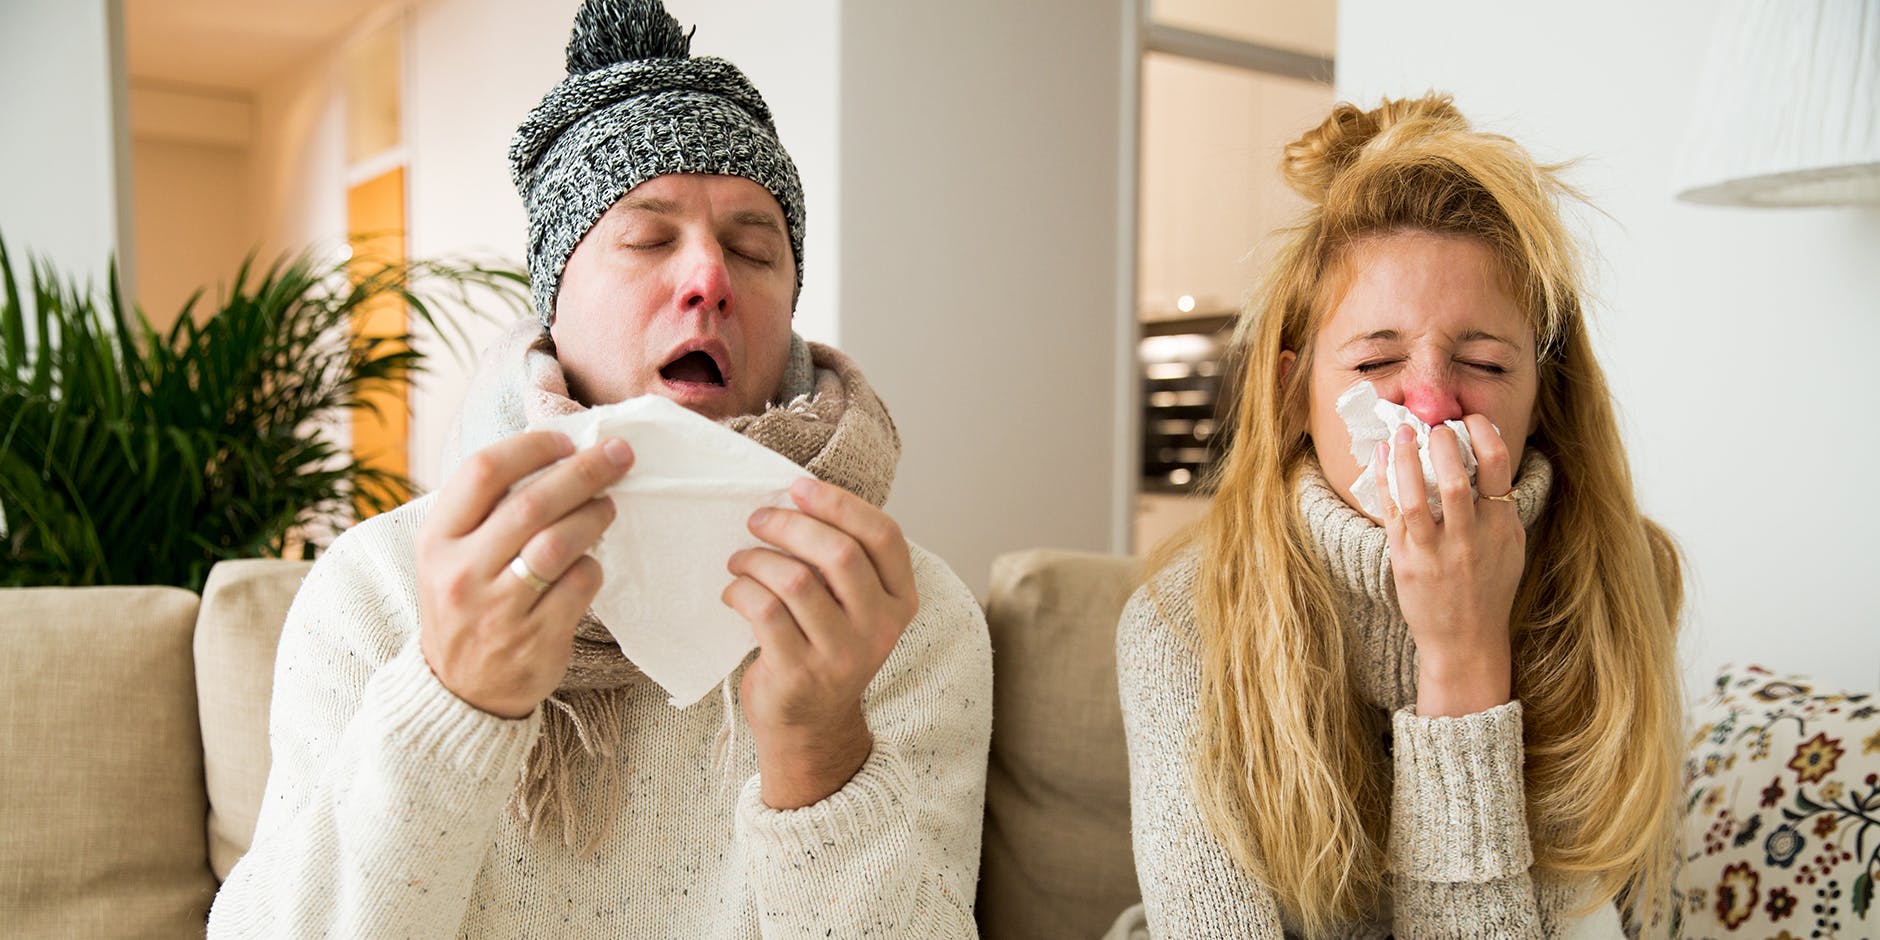 Mand og Kvinde har smittet hinanden med forkølelse